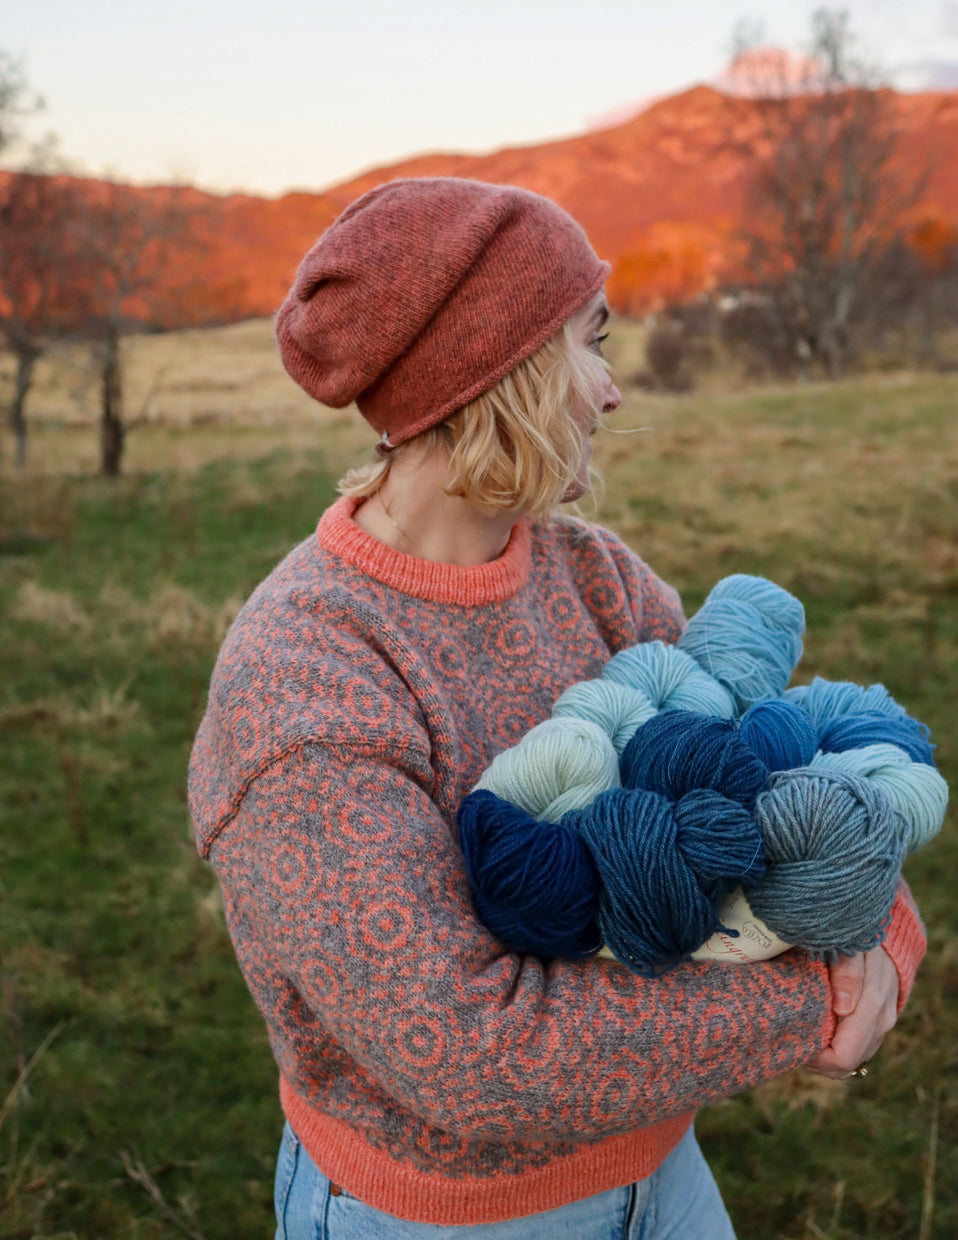 Emma-genser, 2-trådet strikkepakke